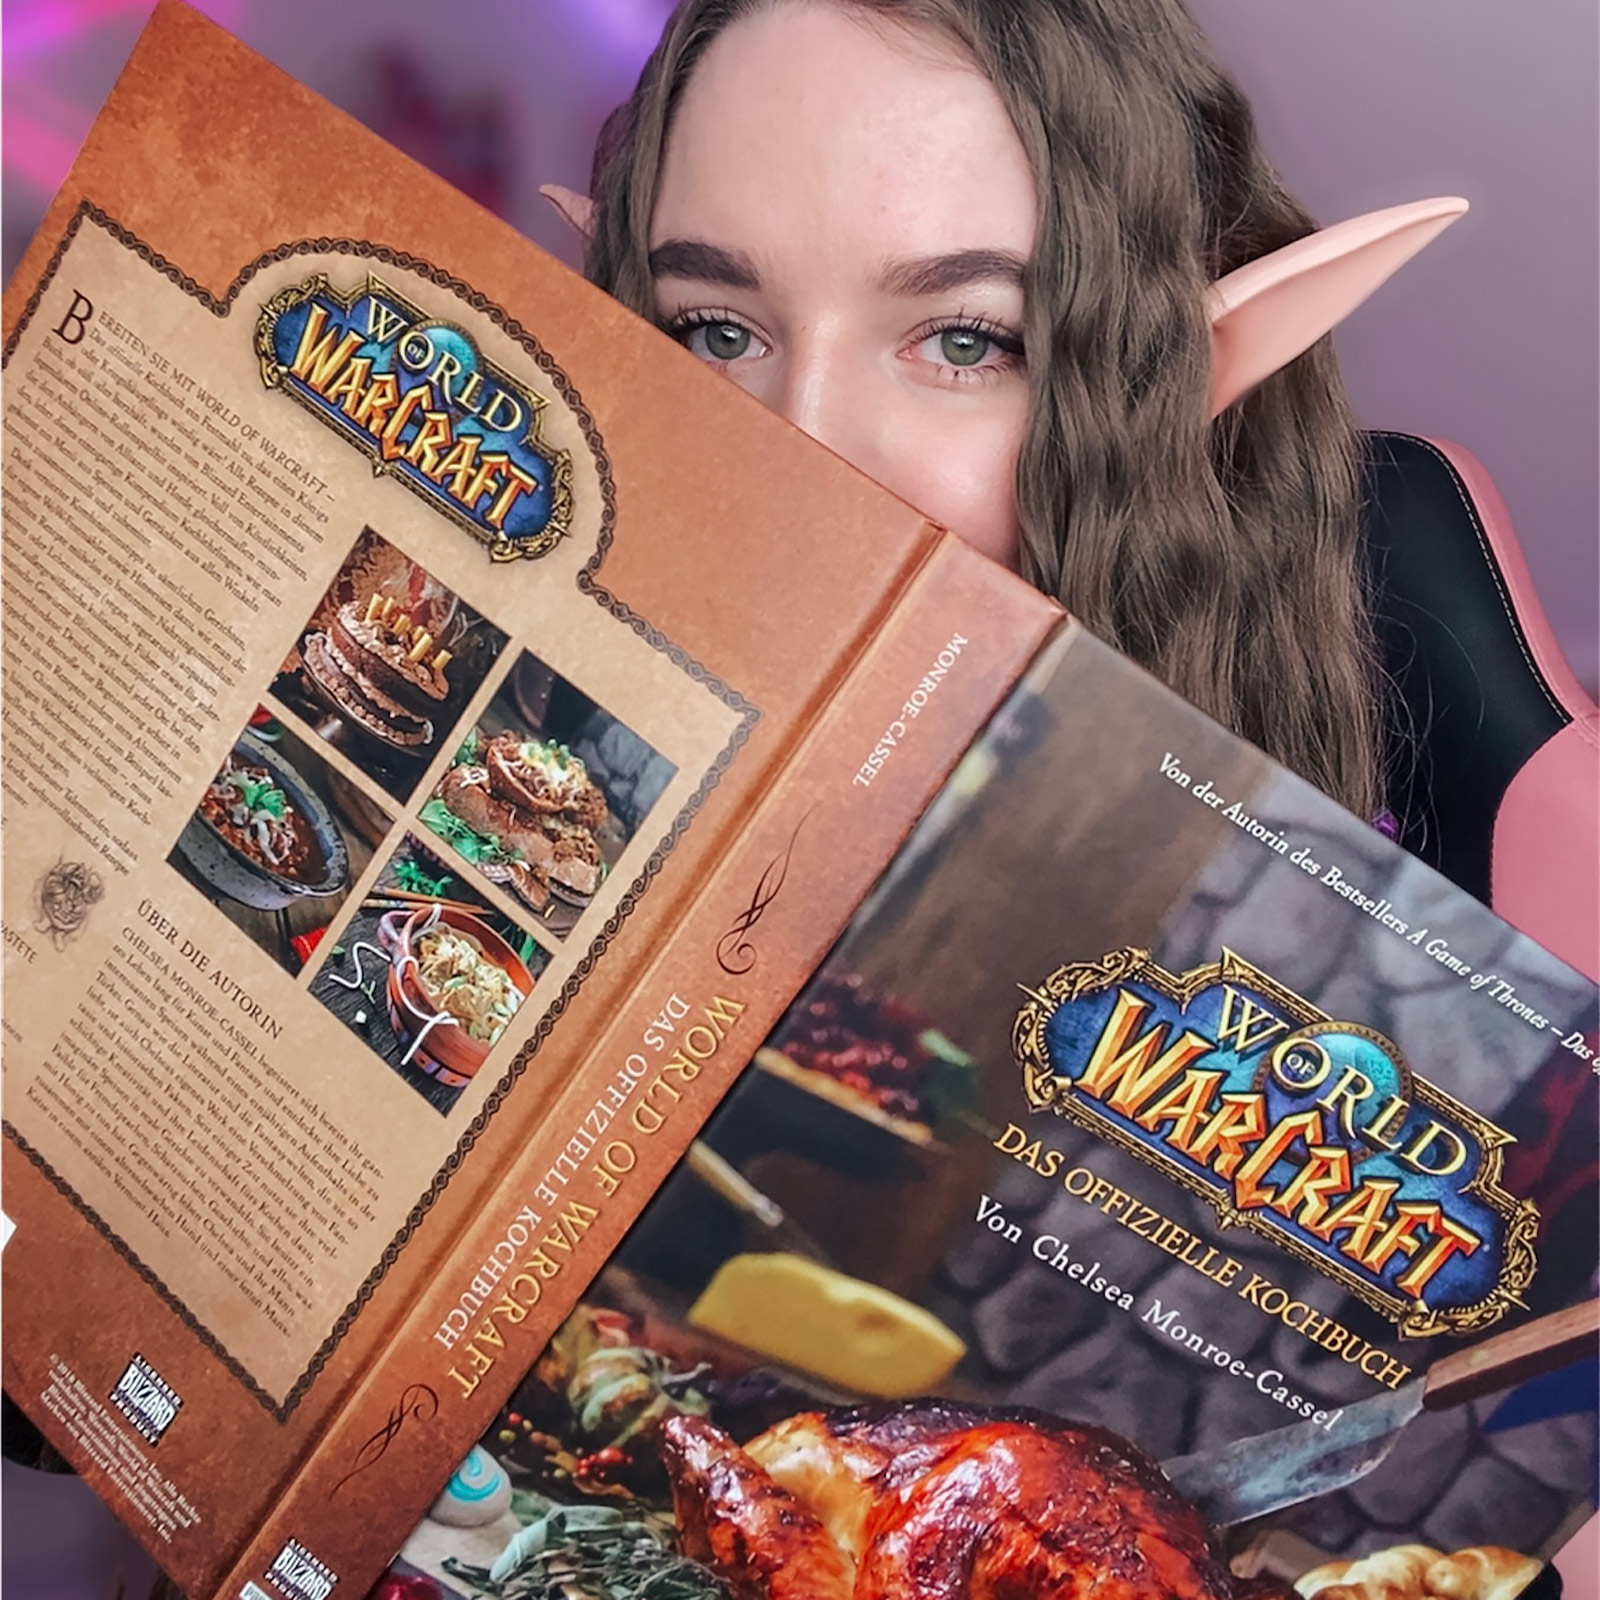 World of Warcraft - Le livre de cuisine officiel